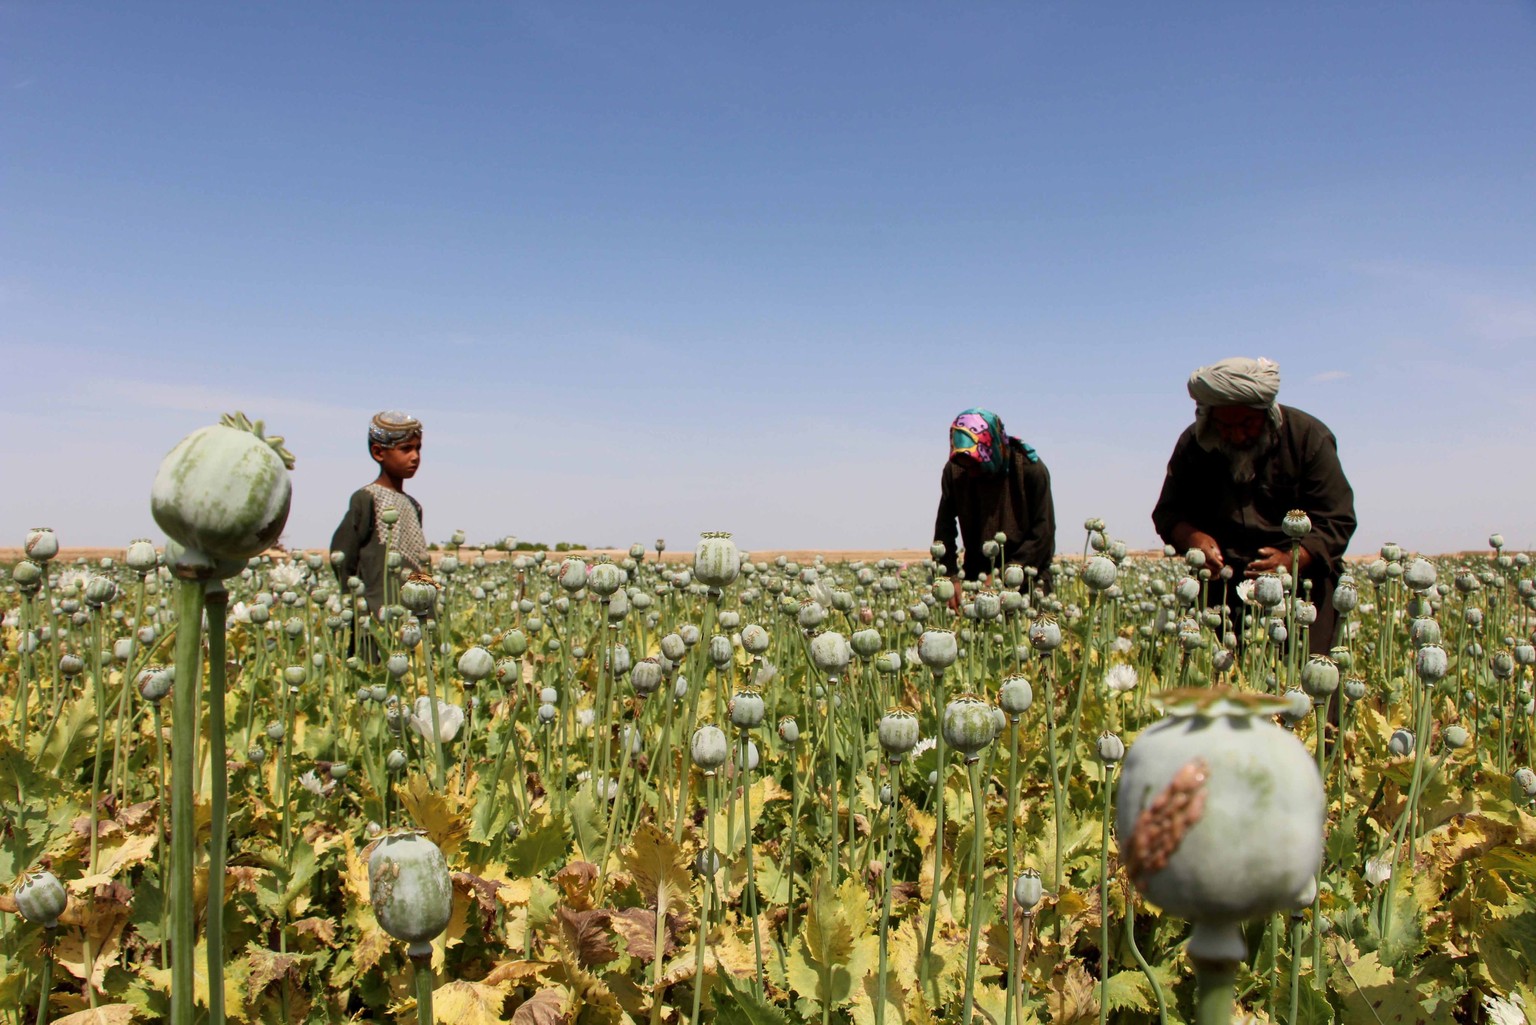 Mohnanbau in Afghanistan: Aus den Knollen wird Opium gewonnen. Aus Opium wird Morphin, aus Morphin wird Heroin hergestellt.&nbsp;